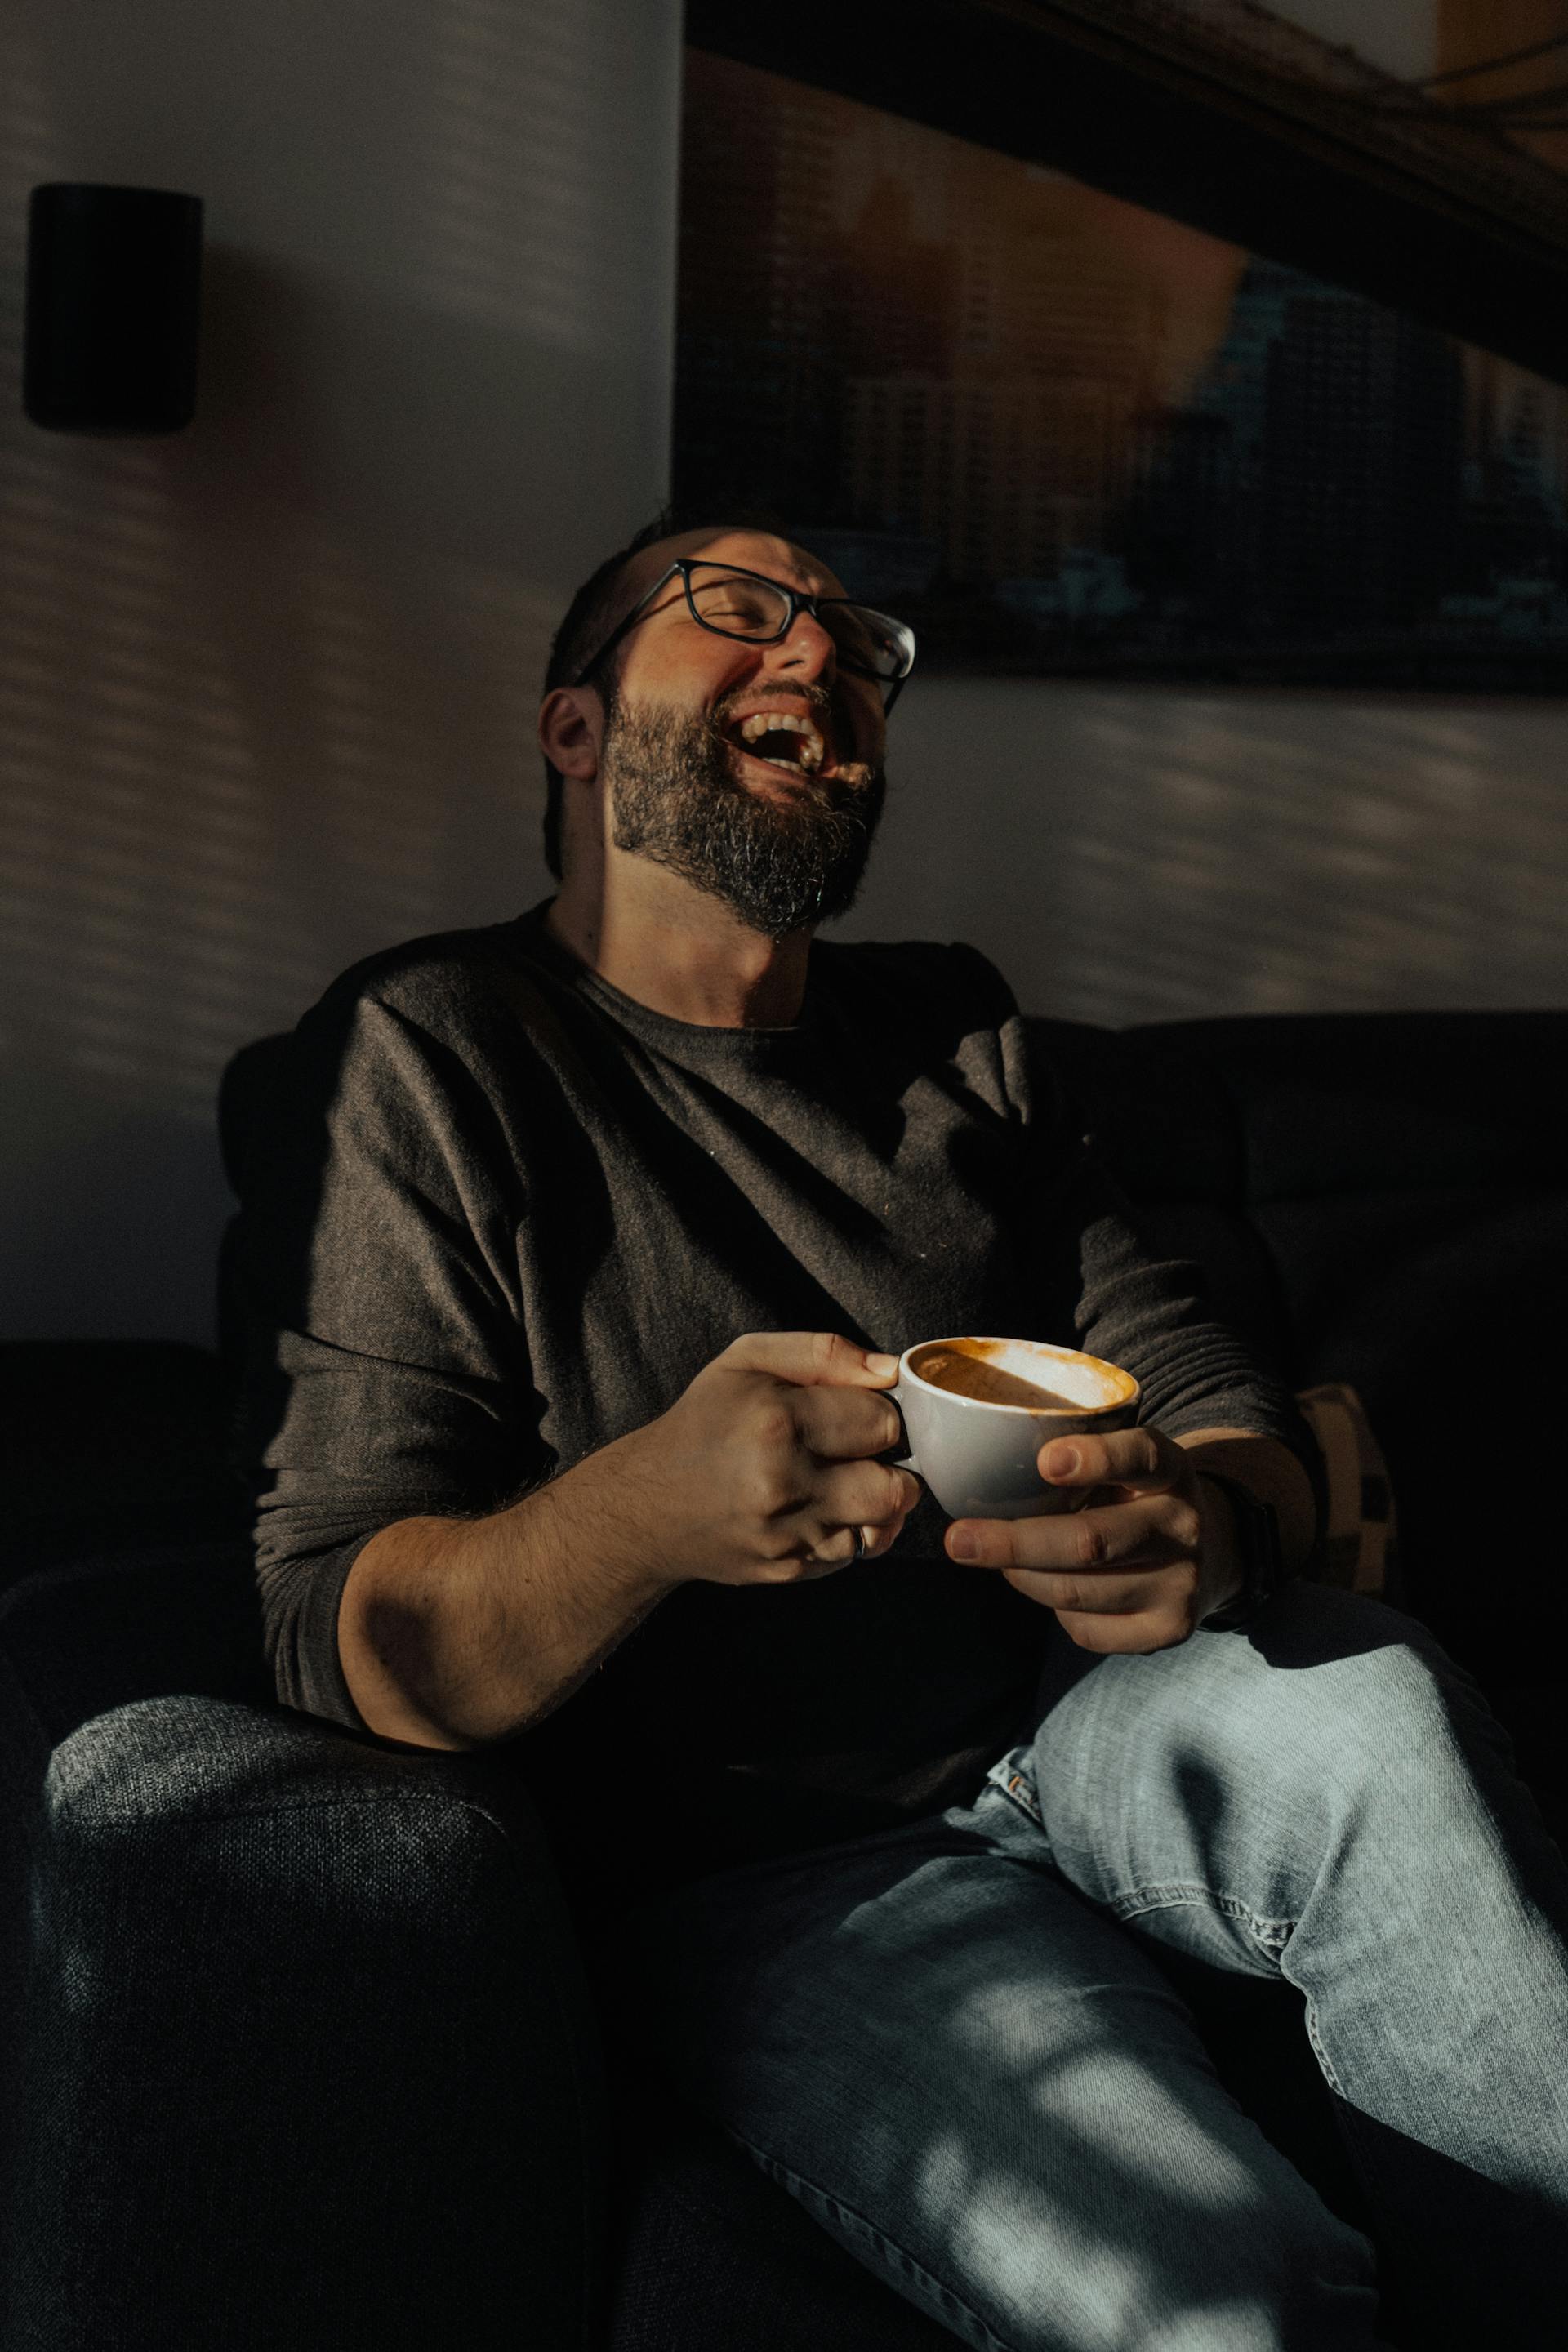 Ein Mann lacht, während er eine Tasse Kaffee in der Hand hält | Quelle: Pexels